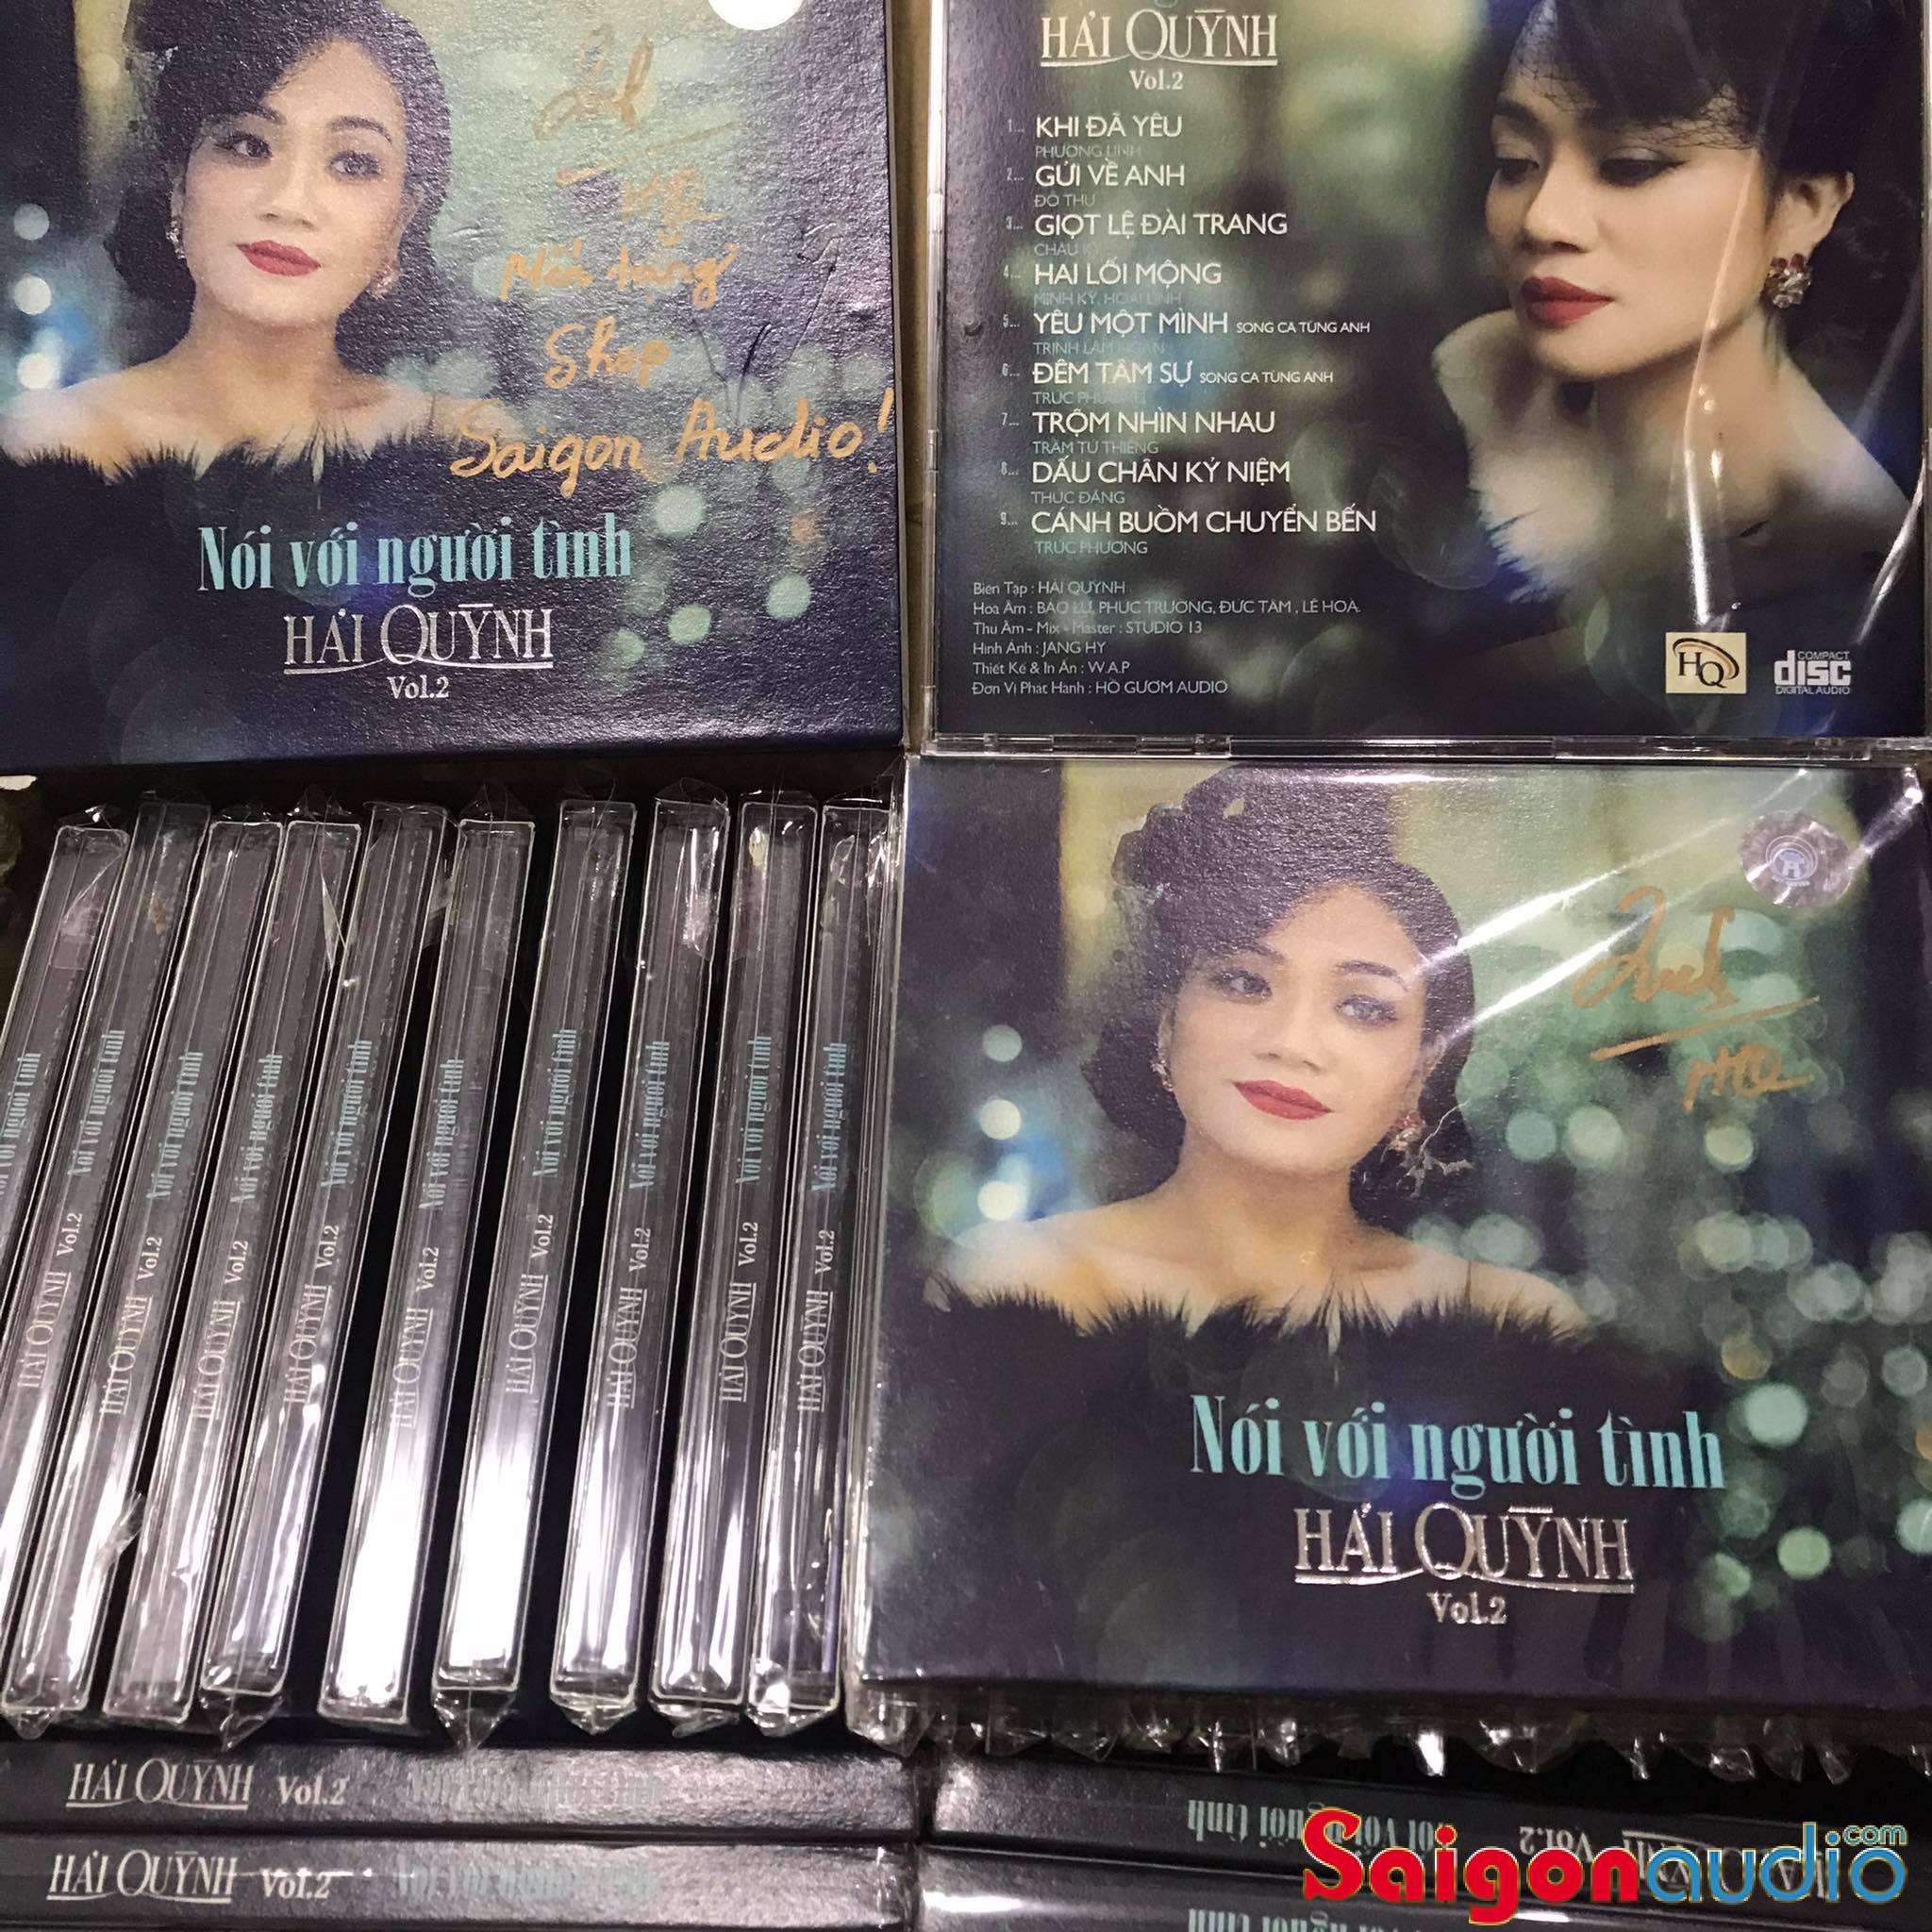 Đĩa CD gốc Nói Với Người Tình Vol 2 - Tiếng hát Hải Quỳnh (Free ship khi mua 2 đĩa CD cùng hoặc khác loại)